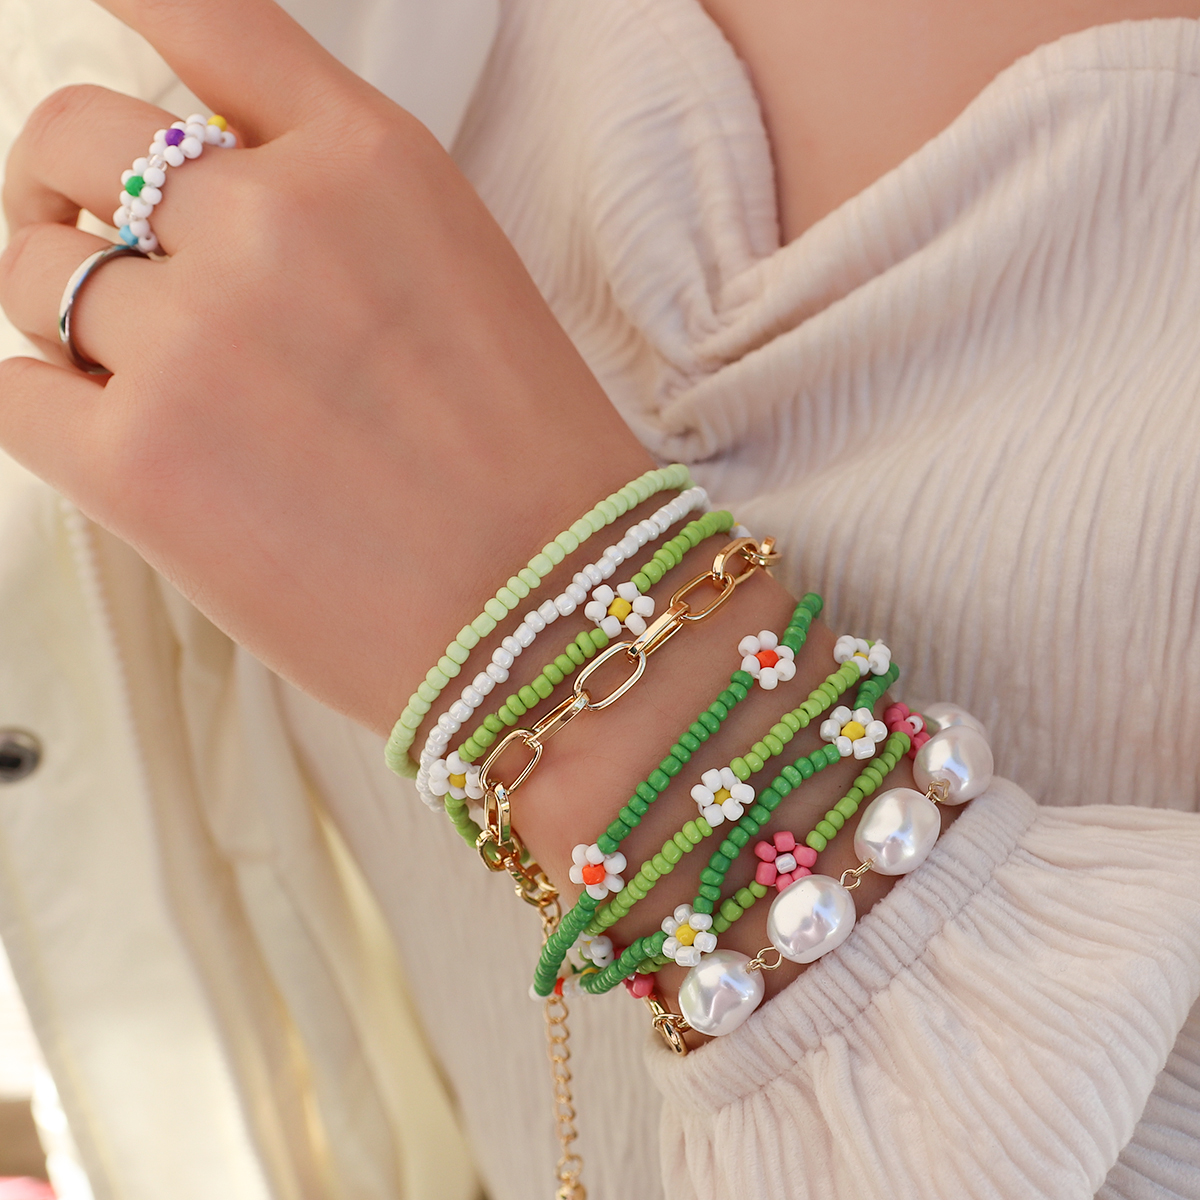 AENSOA Handmade Beaded Daisy Flowers Bracelets for Women Girls Korean Colorful Beads Elastic Wristband Bracelet Trendy Jewelry